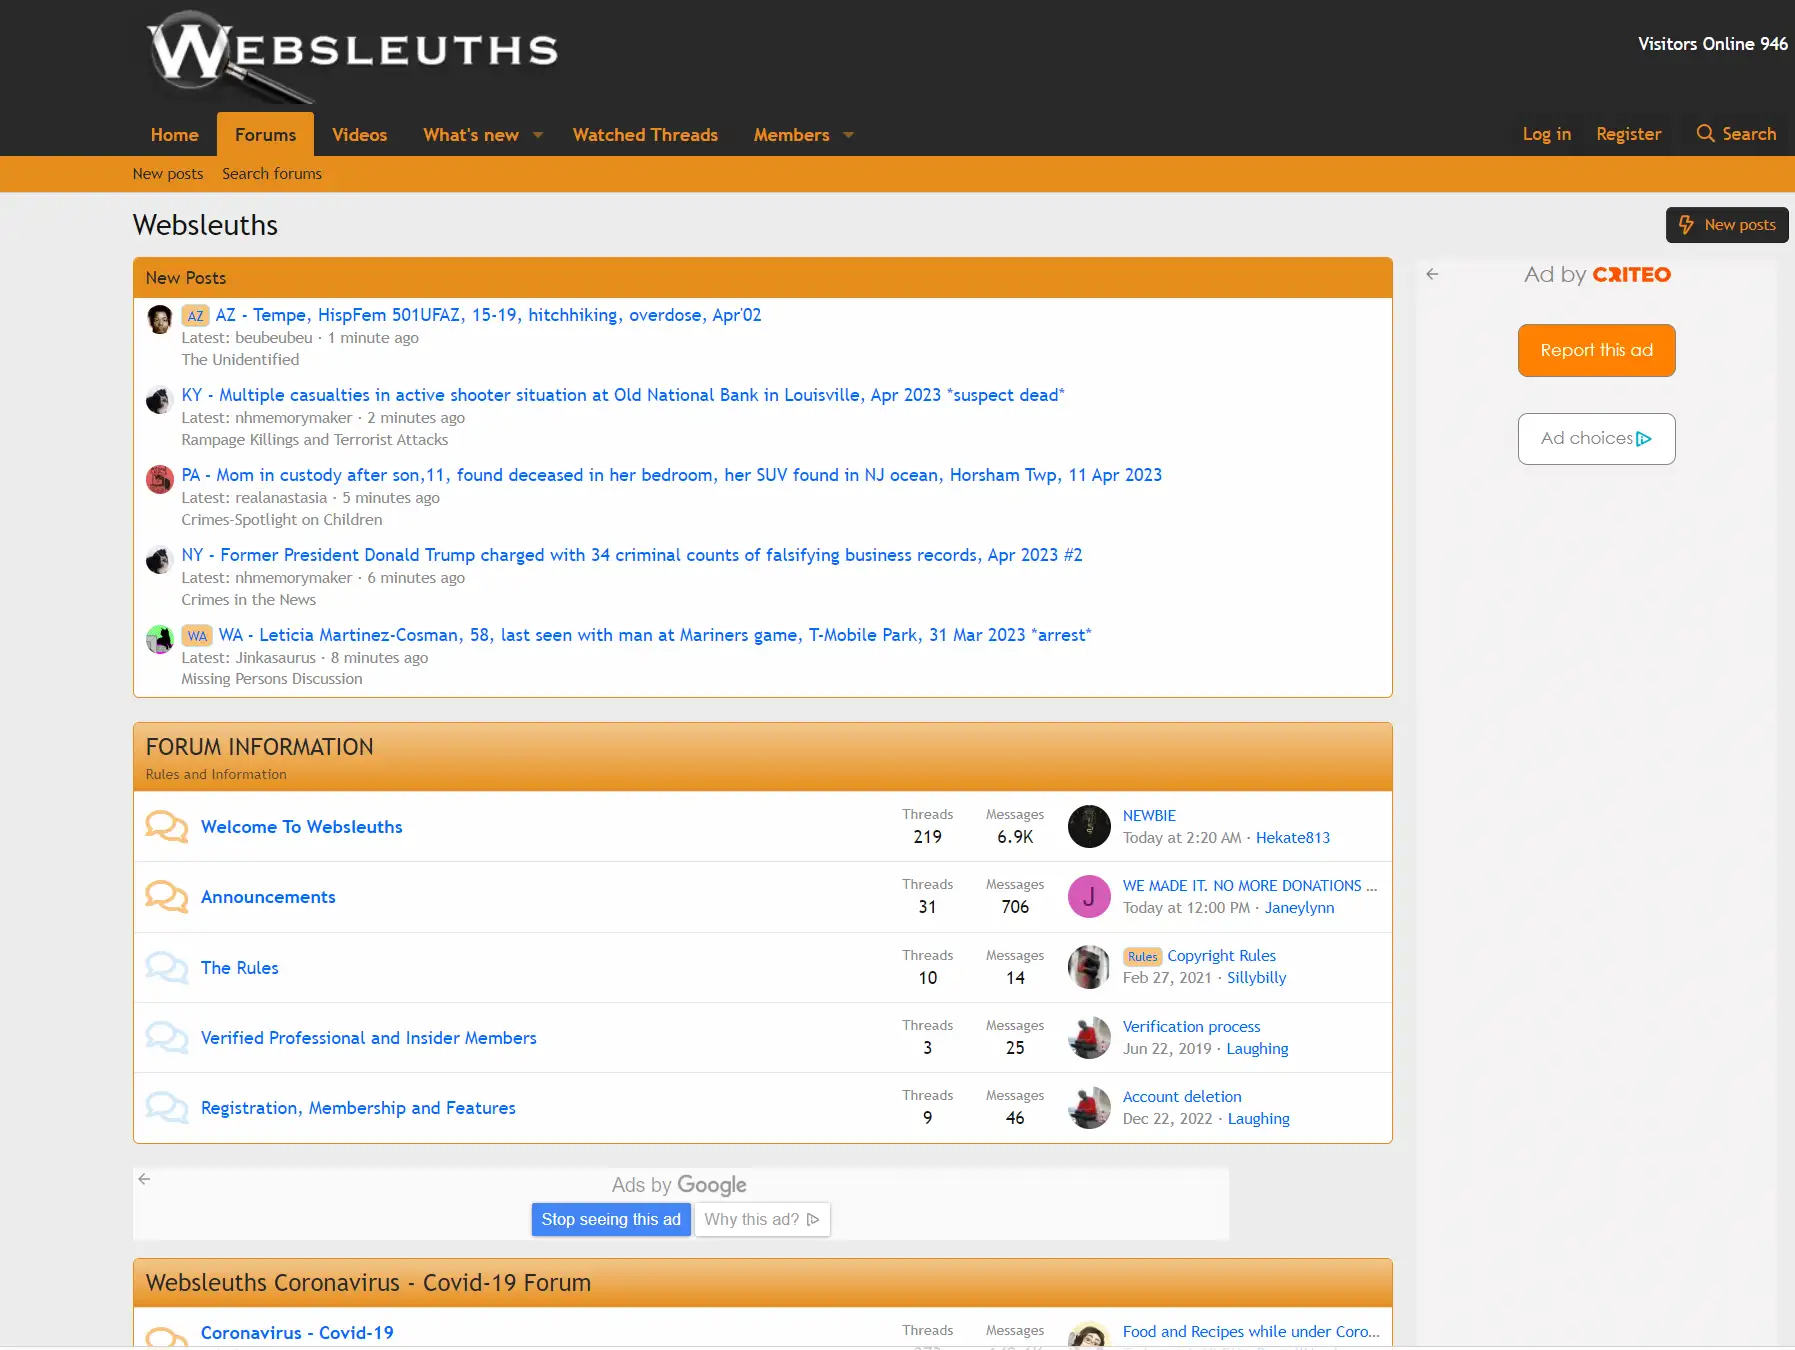 Herramienta de búsqueda de personas desconocidas de Websleuths.com